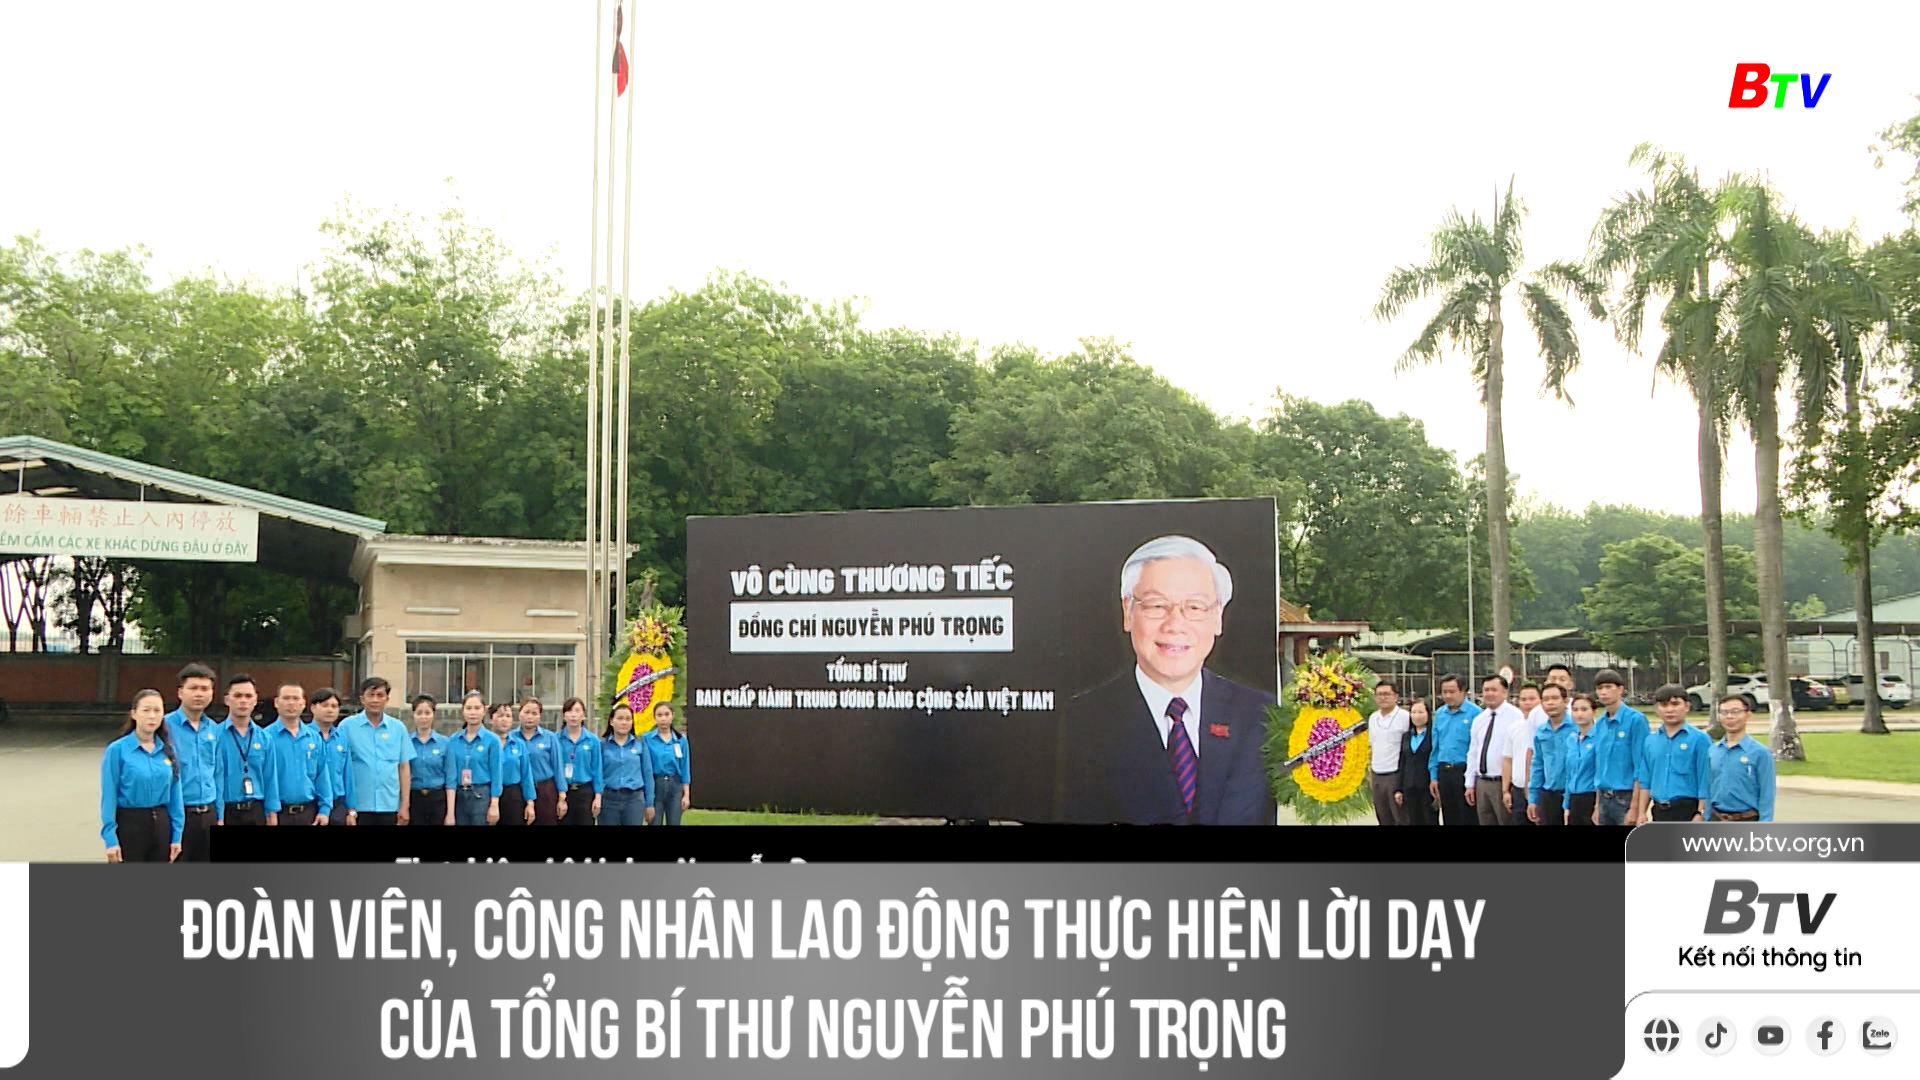 Đoàn viên, công nhân lao động thực hiện lời dạy của Tổng Bí thư Nguyễn Phú Trọng